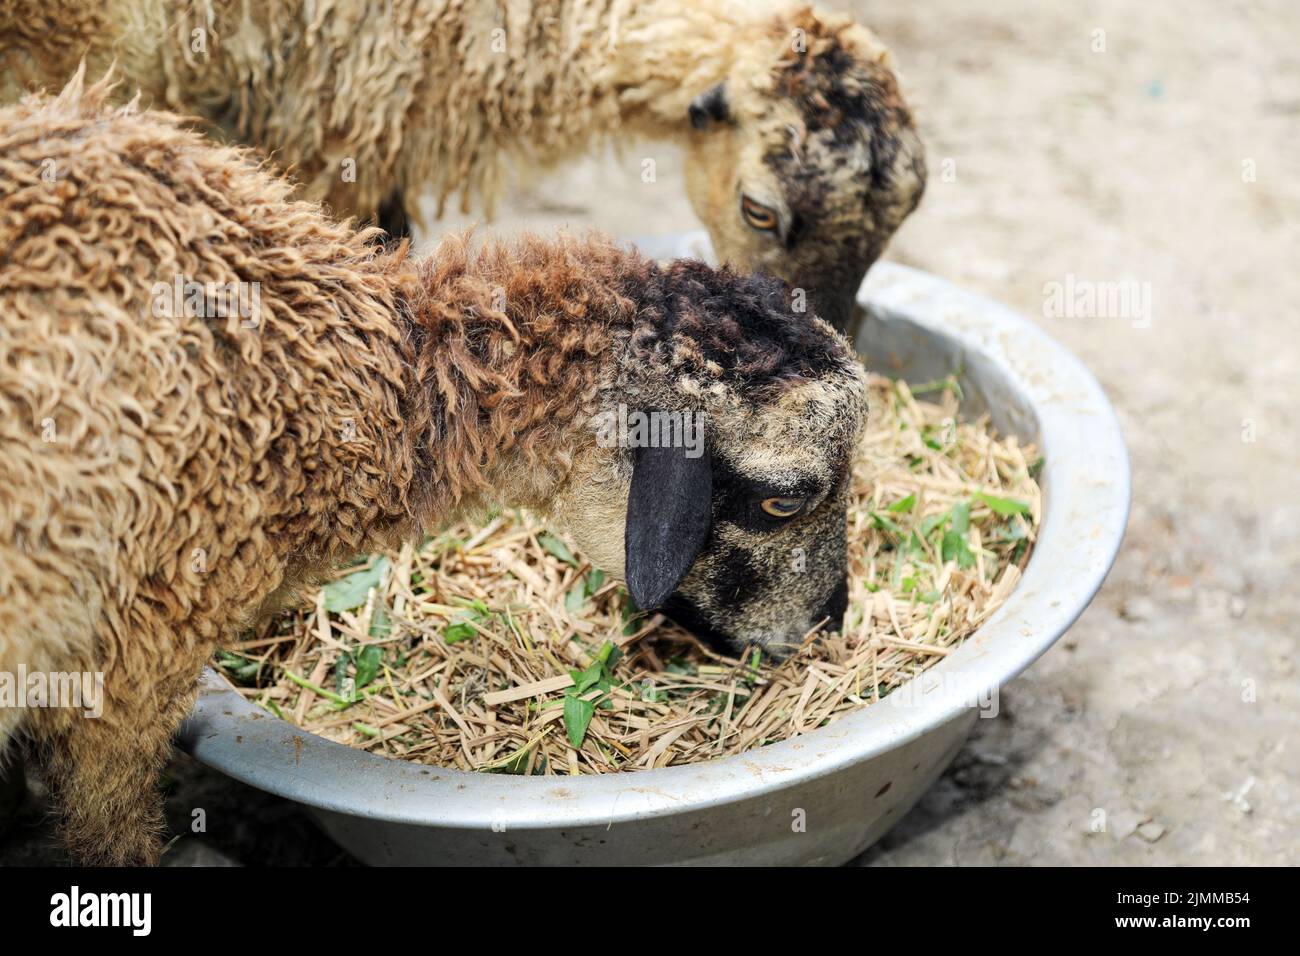 Moutons mangeant de la paille et des feuilles vertes mélangées dans un bol comme une formule d'alimentation biologique pour l'engraissement des moutons. Deux moutons se nourrissent maison en milieu rural. Banque D'Images